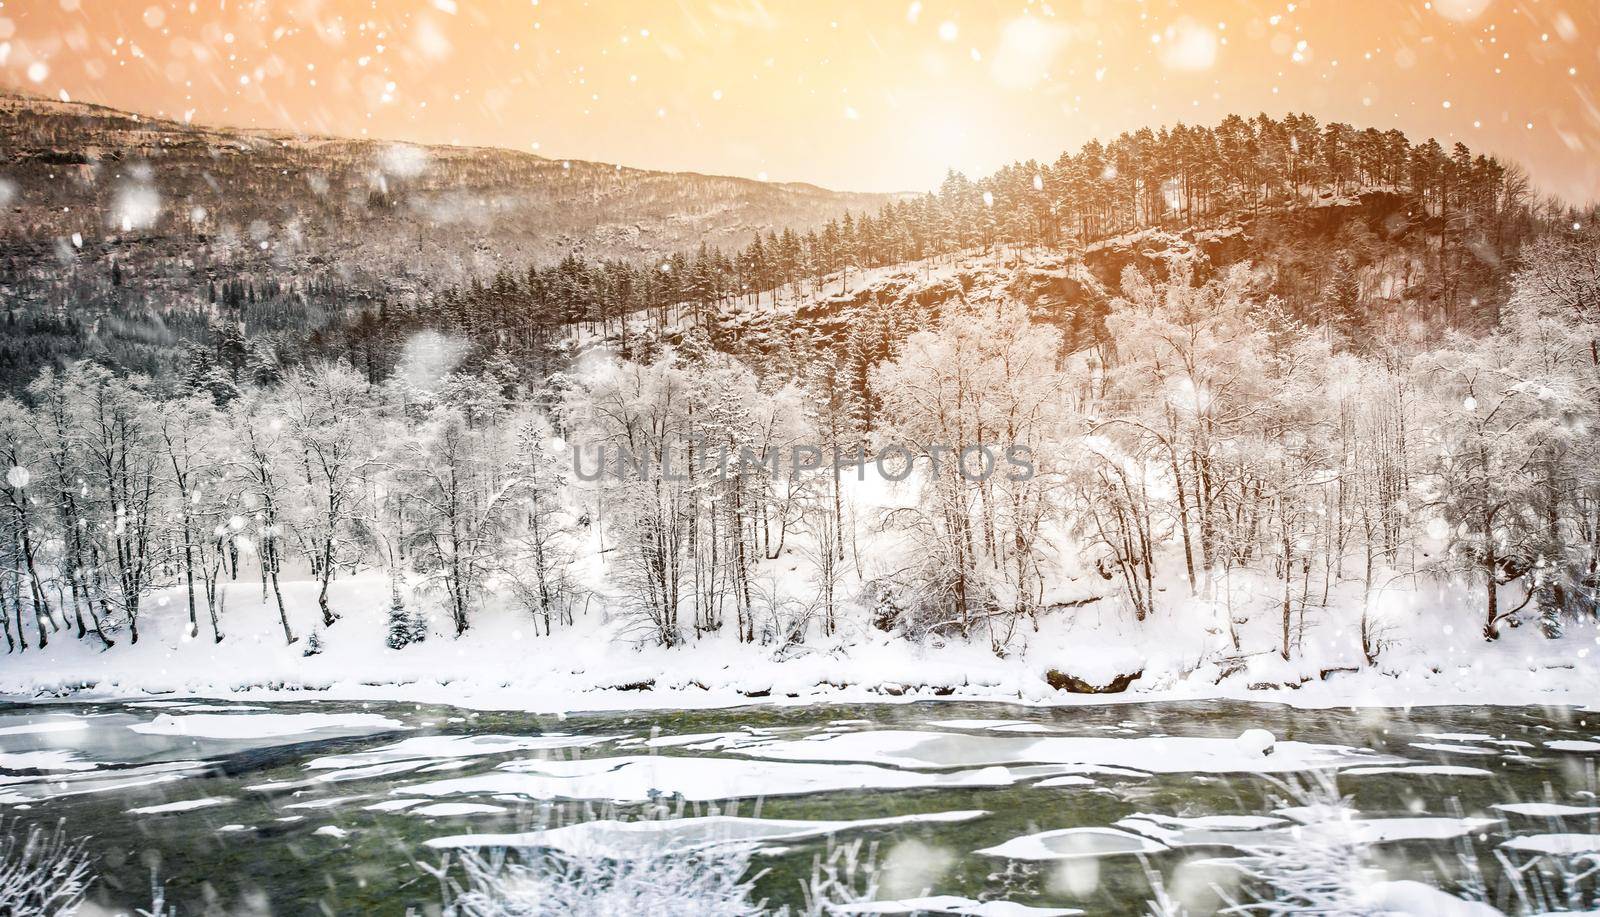 Winter landscape by GekaSkr